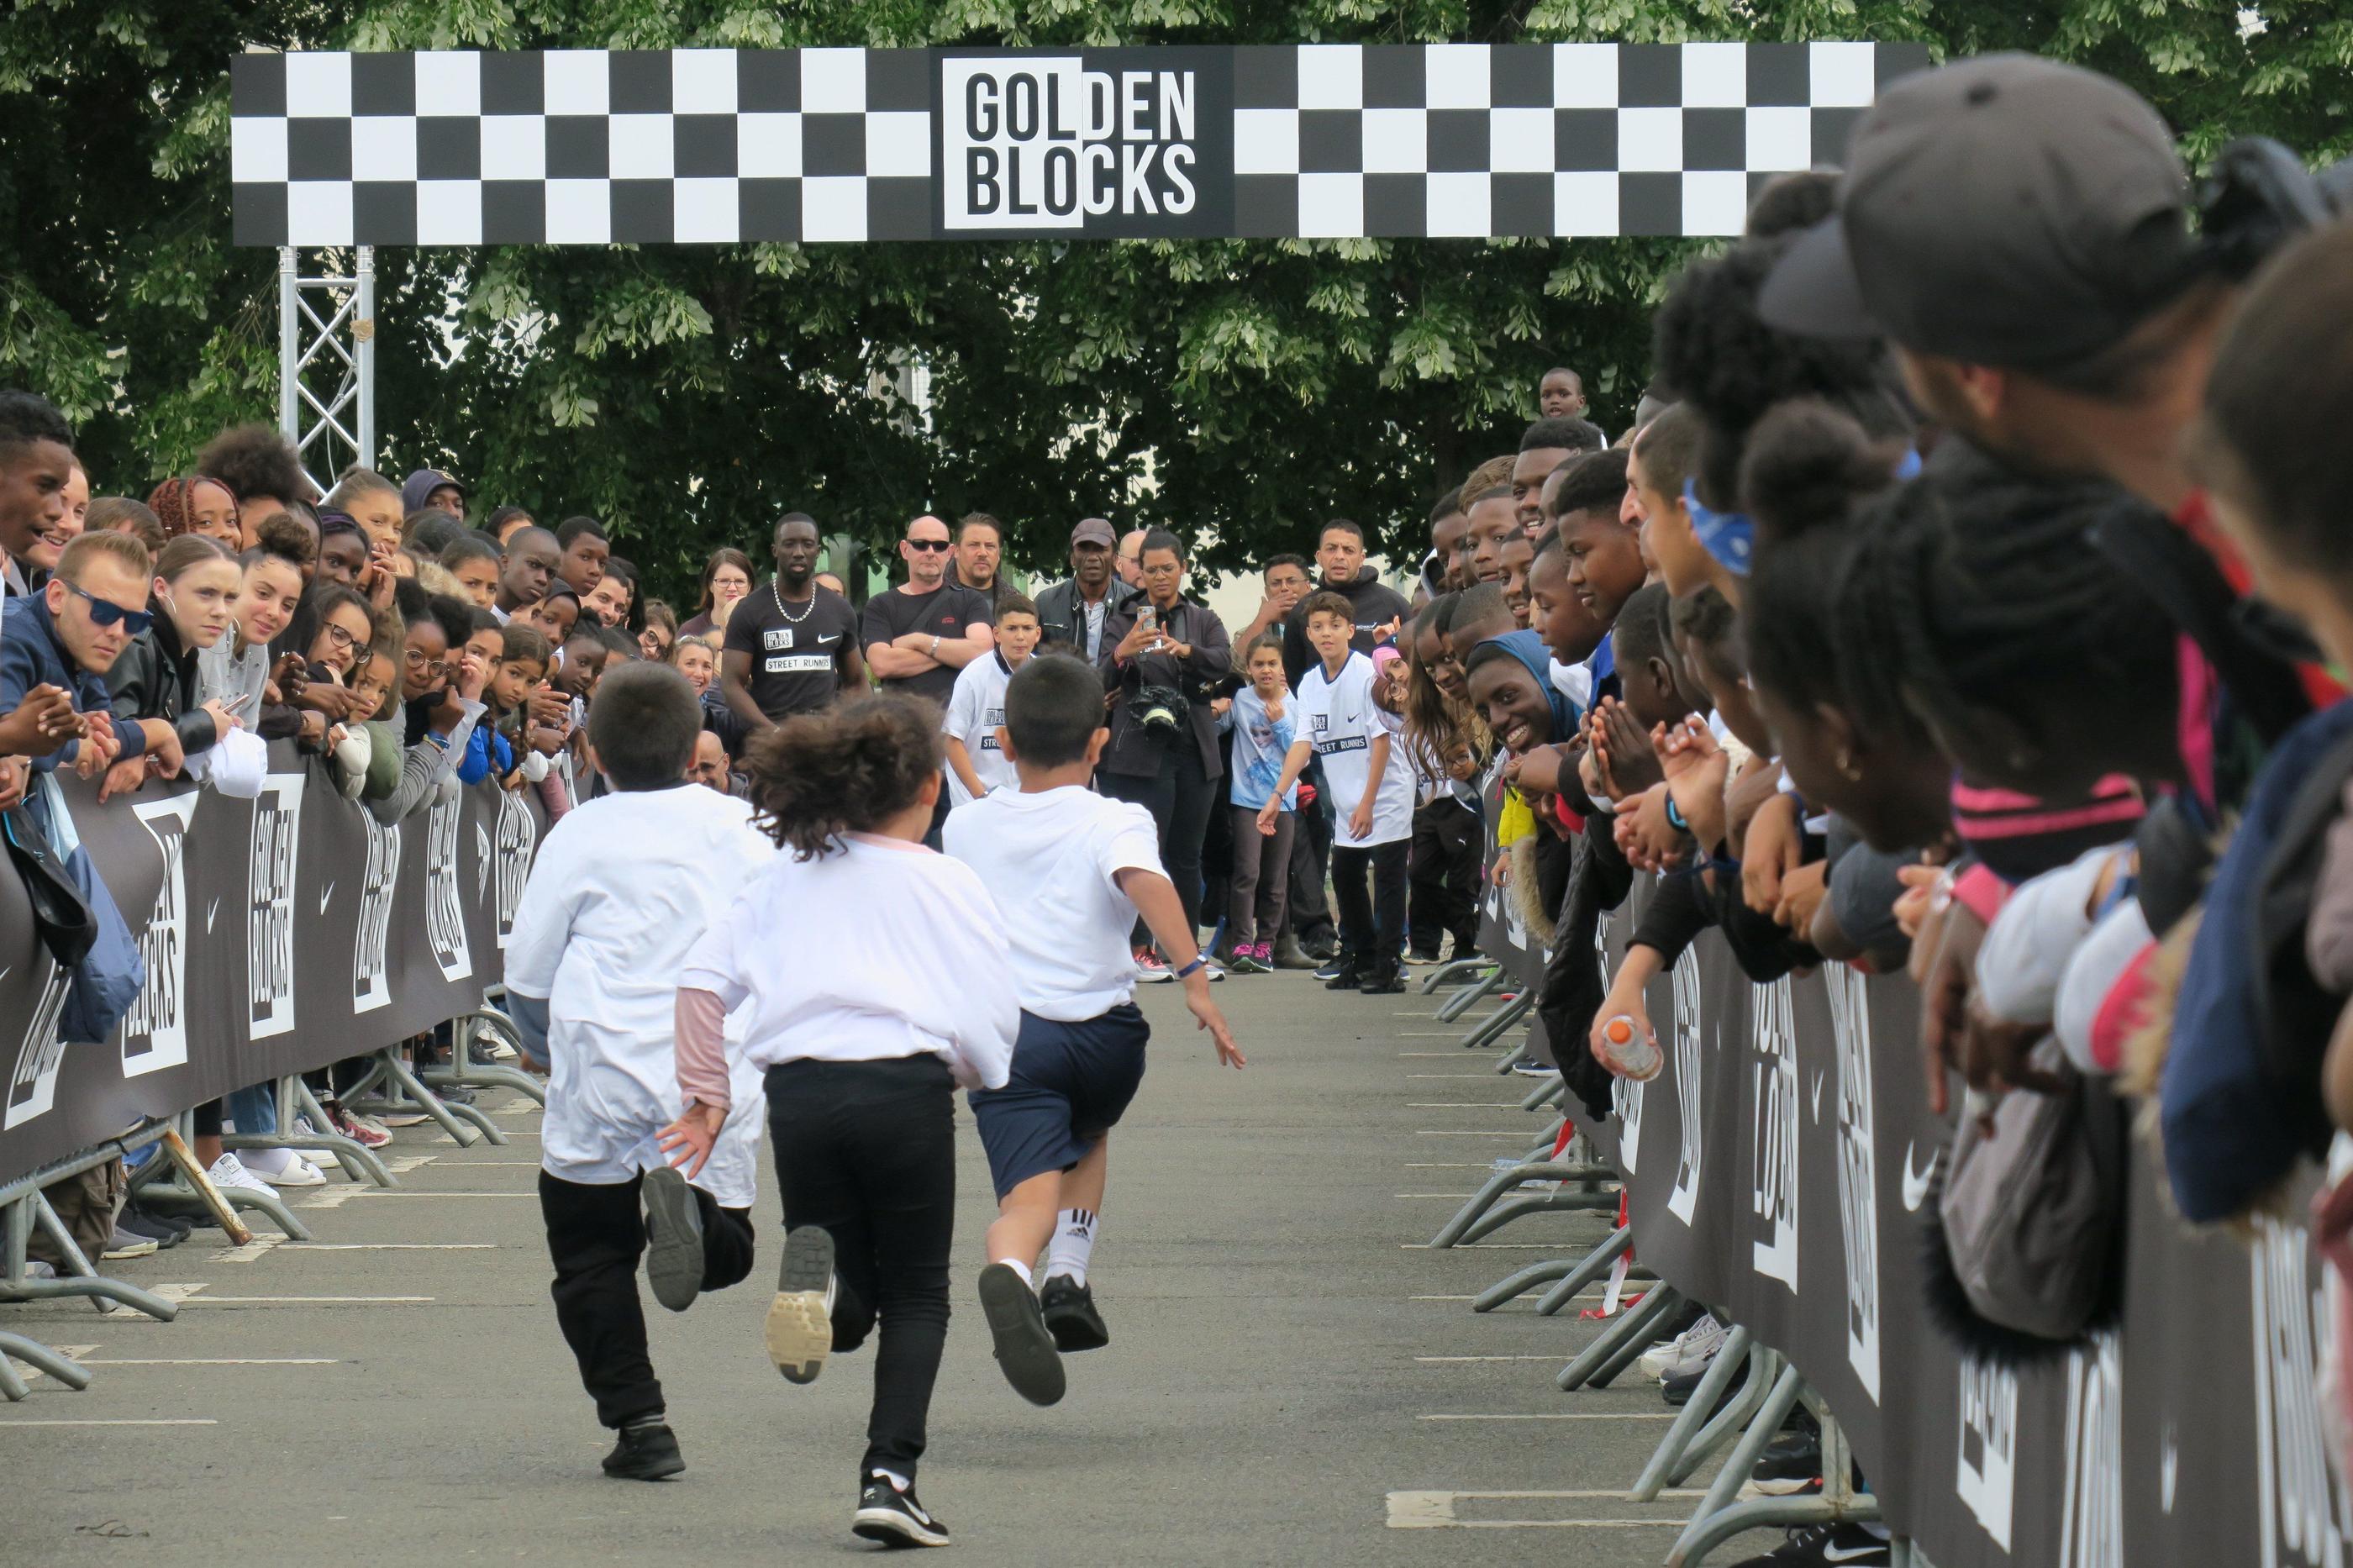 Courir 50 m en duel, comme ici aux Mureaux (Yvelines), c'est le principe des Golden Blocks qui permettent de faire découvrir gratuitement l'athlétisme aux jeunes des quartiers. LP/Virginie Weber